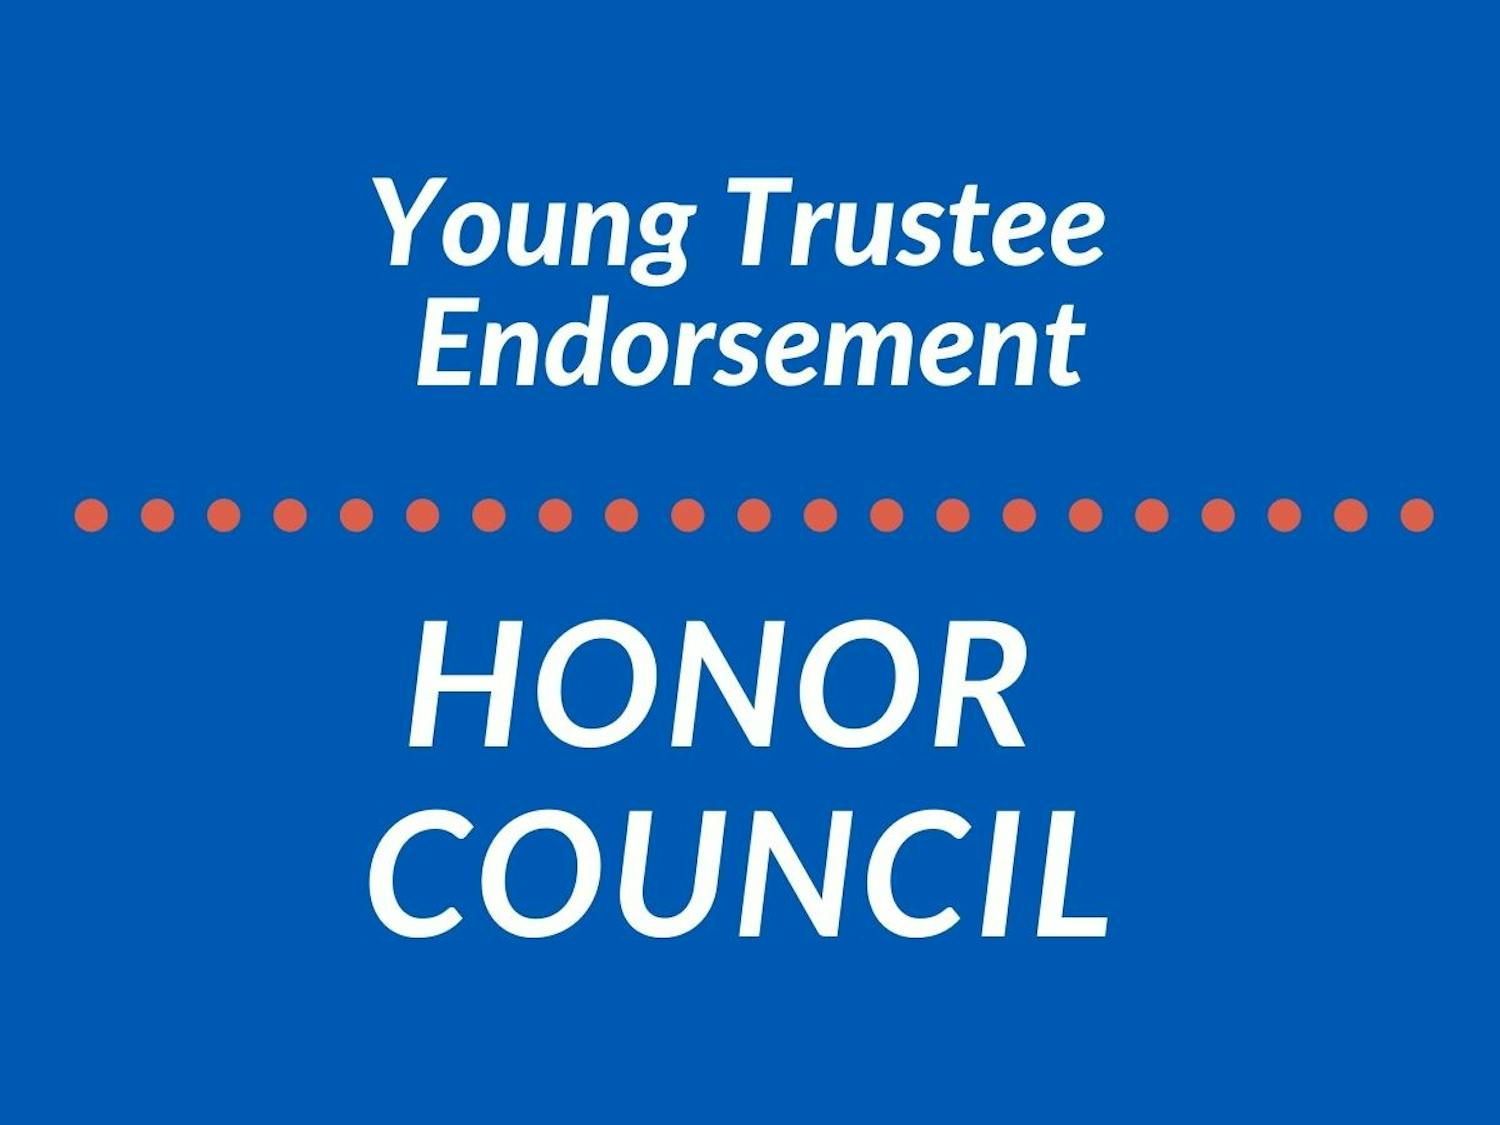 honor council endorsement.jpg